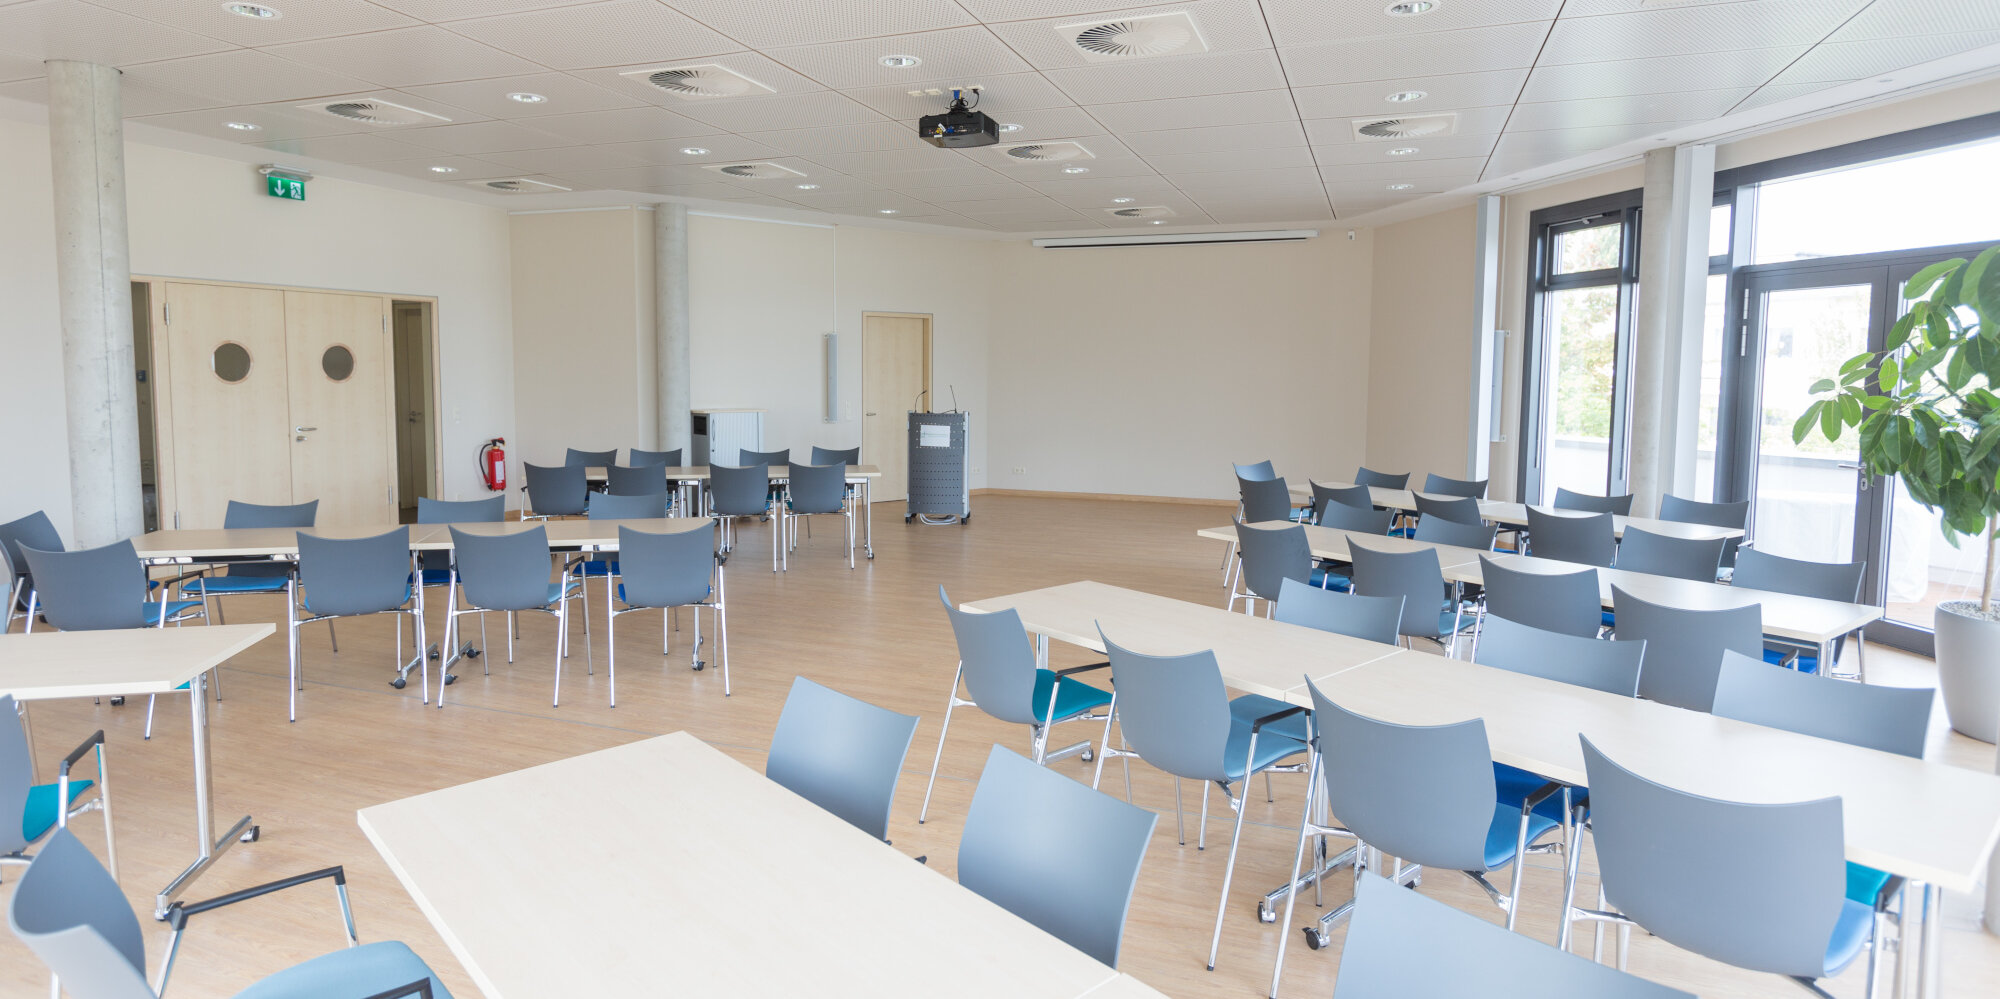 Großer und heller Konferenzraum mit Rednerpult und vielen Sitzmöglichkeiten an rechteckigen Tischen für die Teilnehmenden